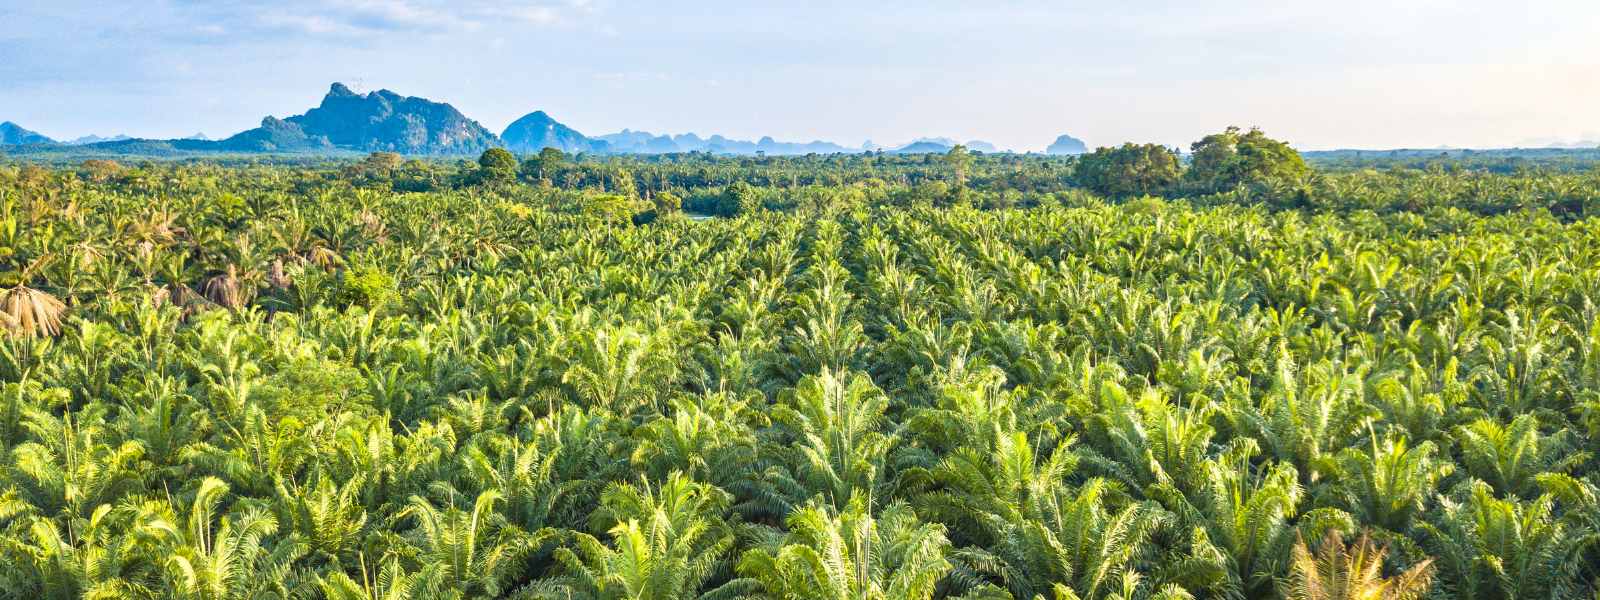 Warum ist Palmöl ein Problem